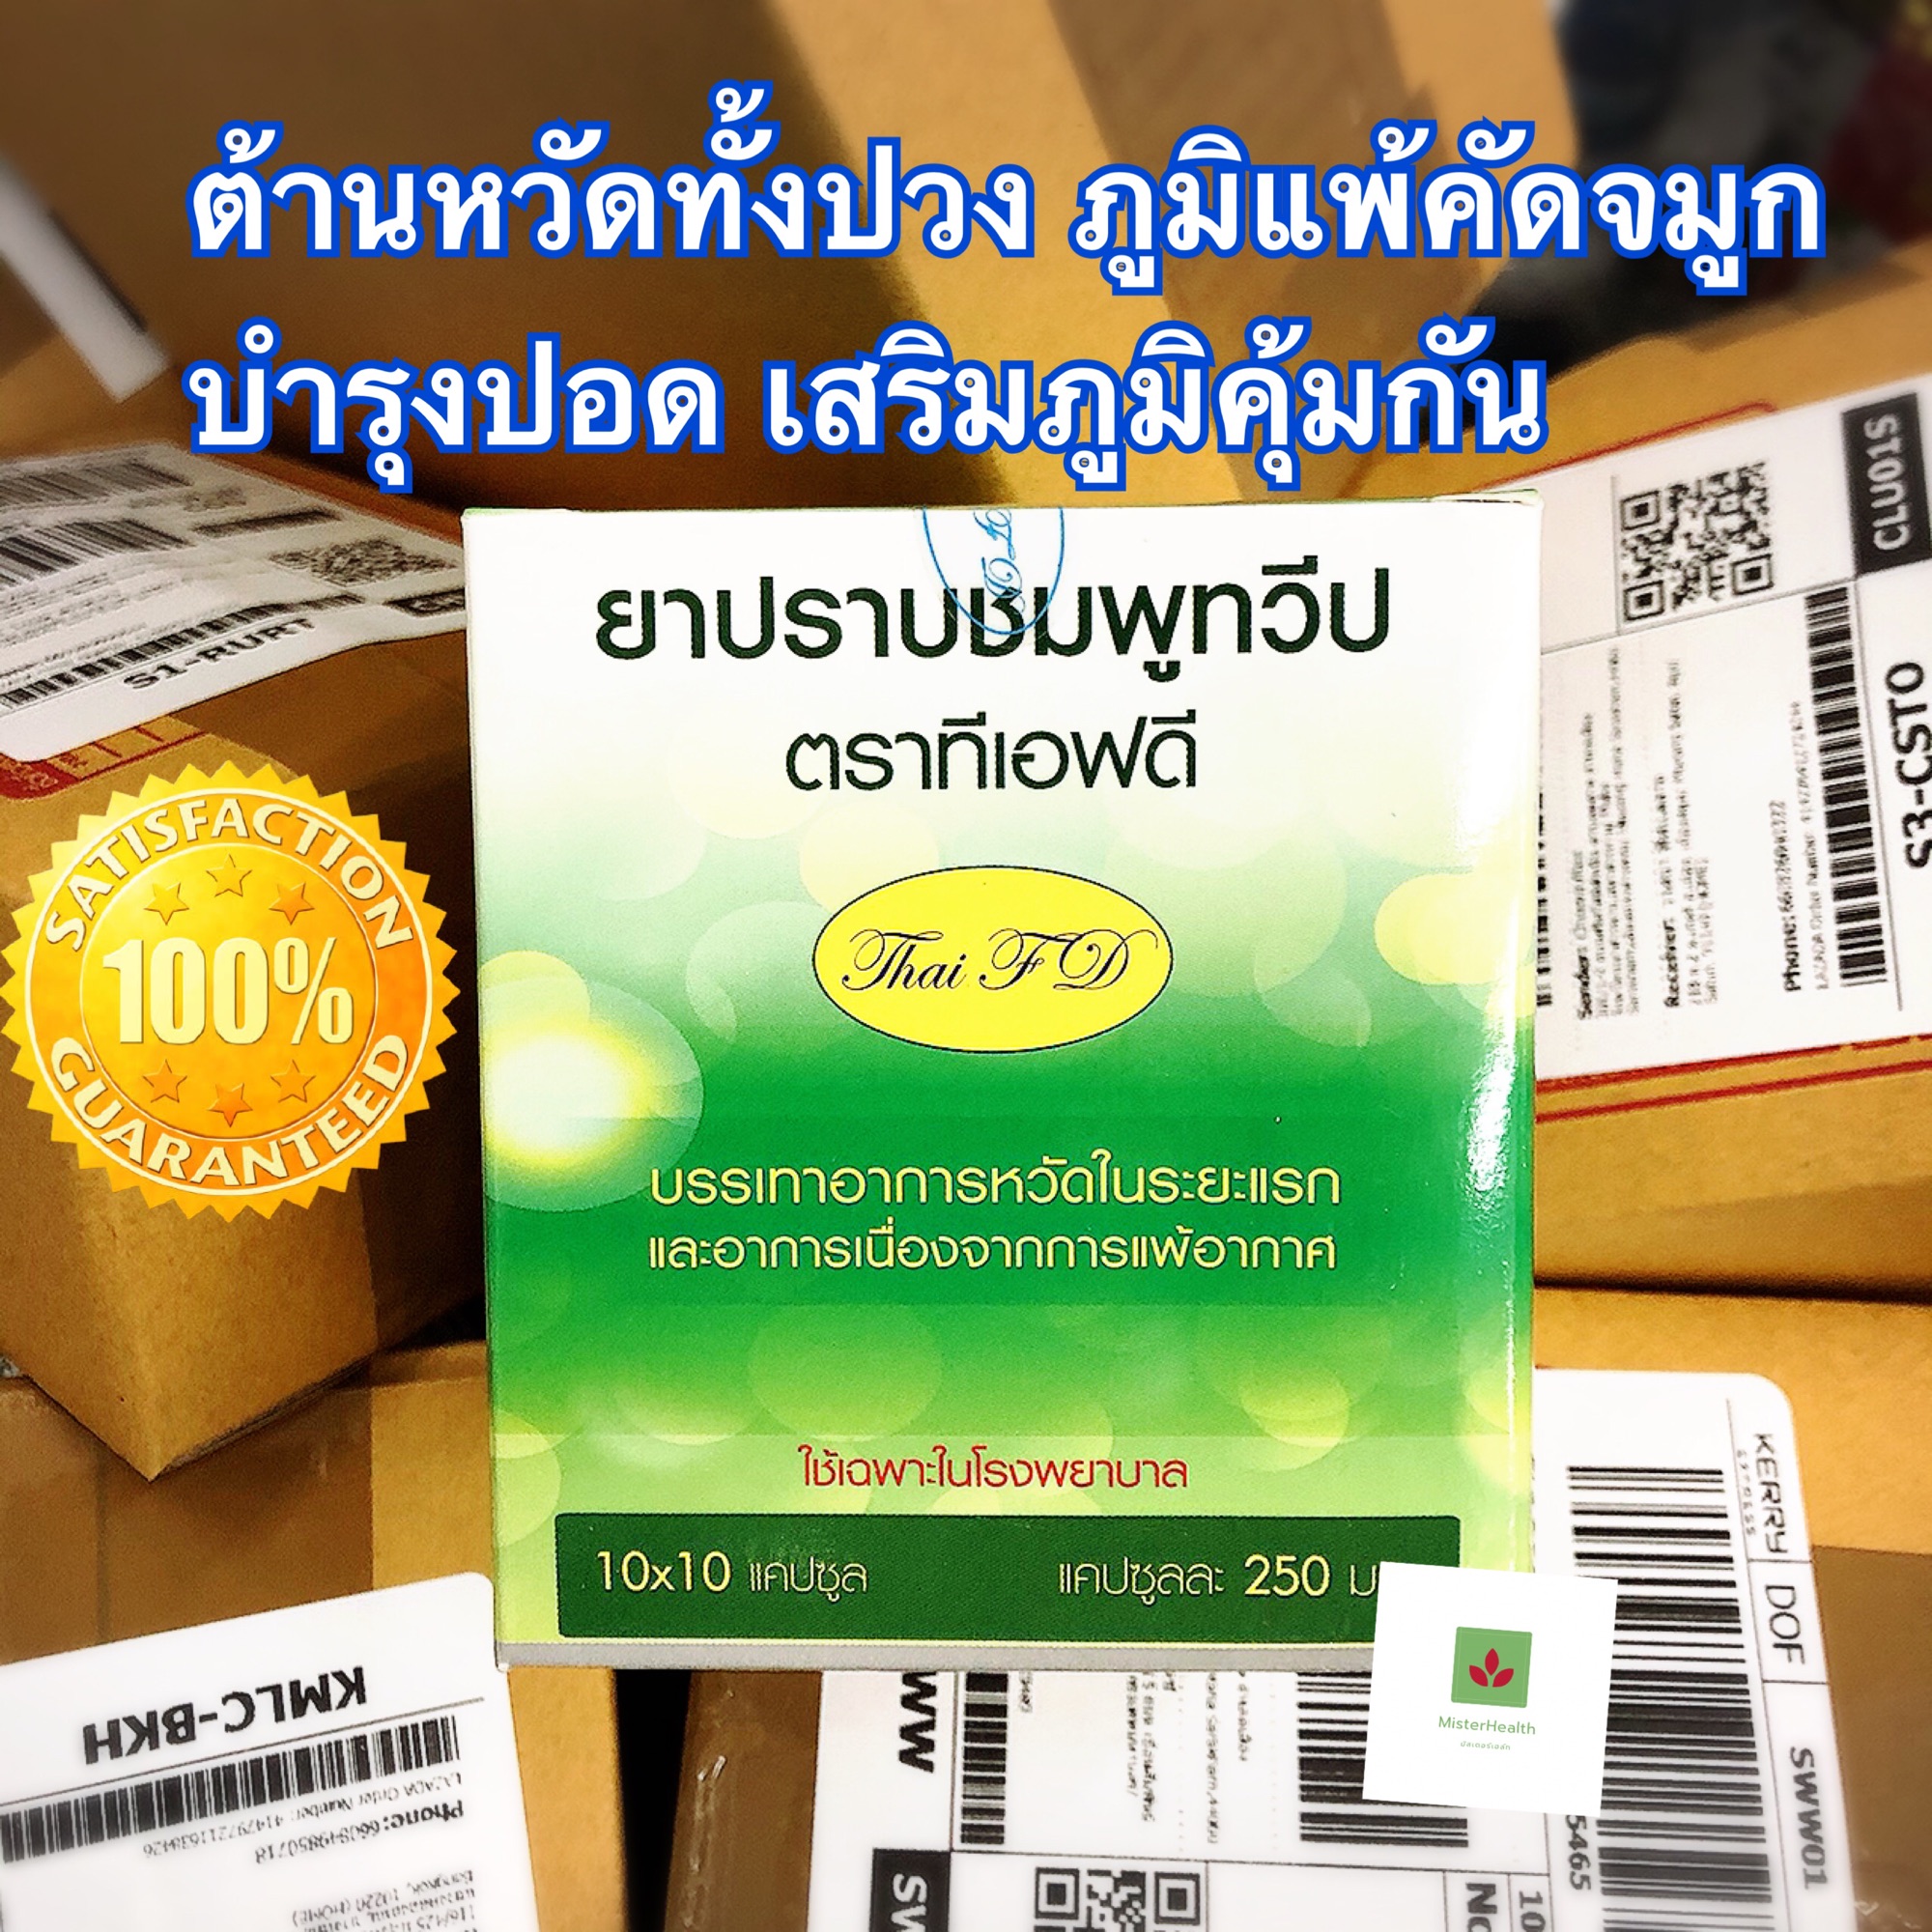 ต้องมีไว้ตอนนี้✅✅ ตำรับ ปราบชมพูทวีป ต้นตำรับแผนไทย กล 100 แคบซูล✅✅TFD✅✅ของแท้ พร้อมส่ง (1 กล่อง)